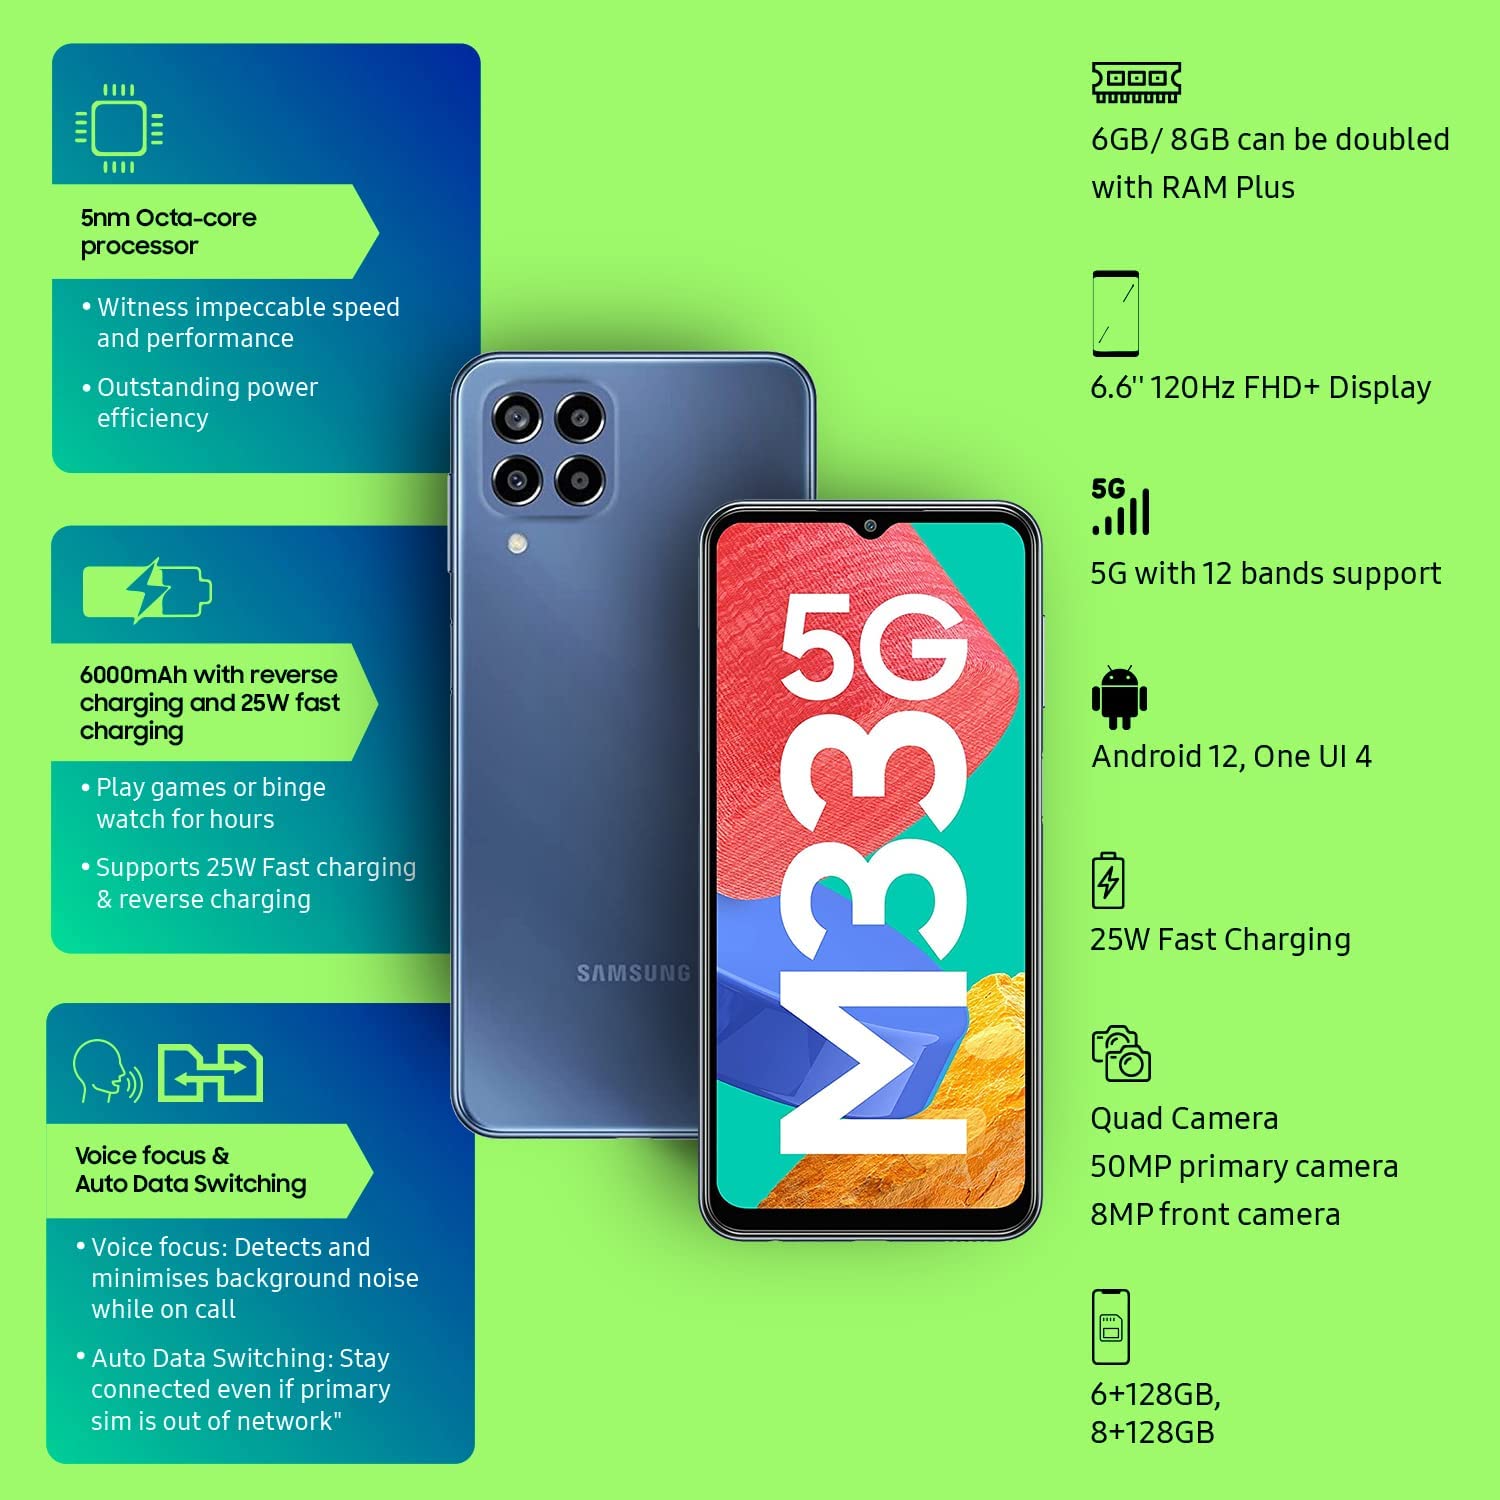 SAMSUNG Galaxy M33 5G Cellular Phone with 6000mAh Battery (8GB RAM/128GB Storage, Deep Ocean Blue)